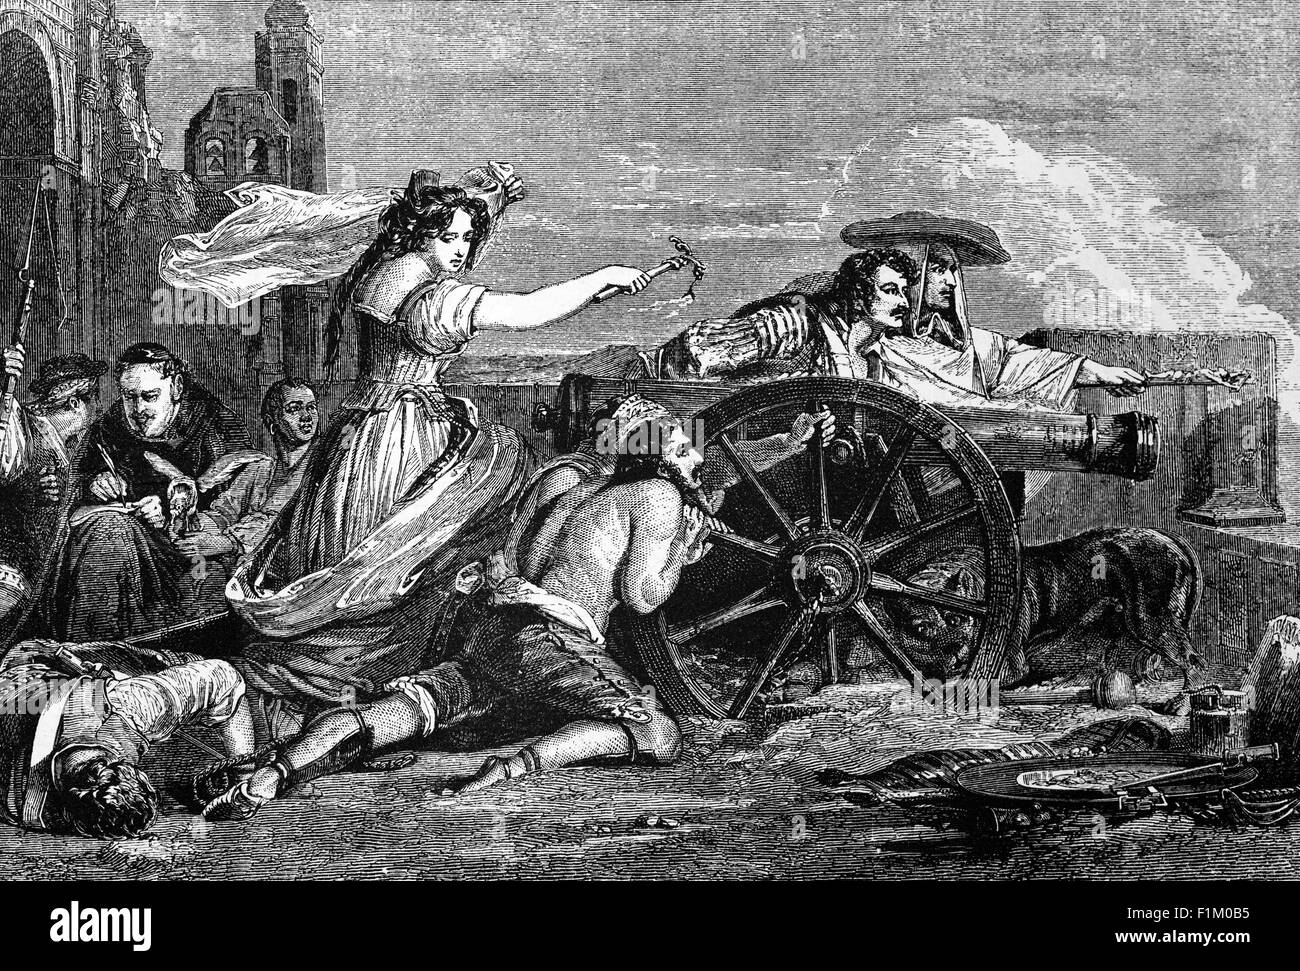 Agostina, die Magd von Saragossa (1786-1857), war eine spanische Heldin, die Spanien während des Peninsular-Krieges verteidigte. Am 15. Juni 1808 stürmte die französische Armee Zaragosa. Agustina, auf den Wällen angekommen, beobachtete Verteidiger fallen zu Französisch Bajonette. Mit den französischen Truppen ein paar Meter entfernt, Agustinaran lief nach vorne und feuerte eine Kanone Schredder eine Welle von Angreifern auf Punkt-leere Reichweite. Der Anblick einer einsamen Frau, die tapfer die Kanonen behielt, inspirierte die flüchtenden spanischen Truppen zur Rückkehr, und nach einem blutigen Kampf gaben die Franzosen den Angriff auf Zaragosa auf und gaben ihre Belagerung auf. Stockfoto